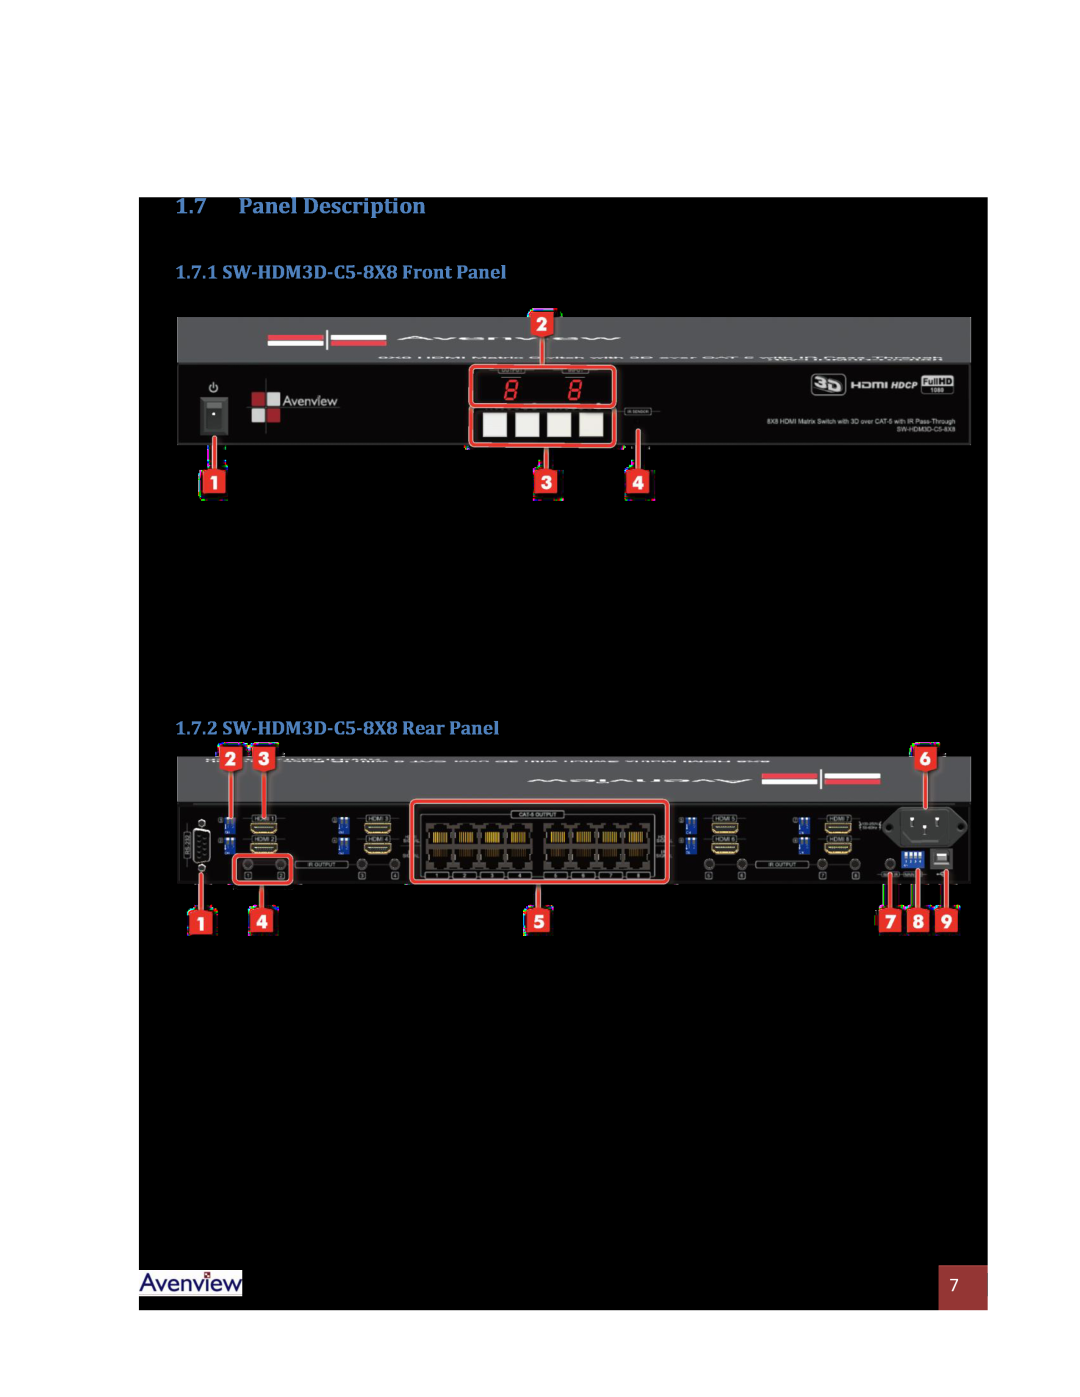 Avenview Panel Description, SW-HDM3D-C5-8X8 Front Panel, SW-HDM3D-C5-8X8 Rear Panel, HDMI 1 - 8 HDMI Inputs, AC Power 